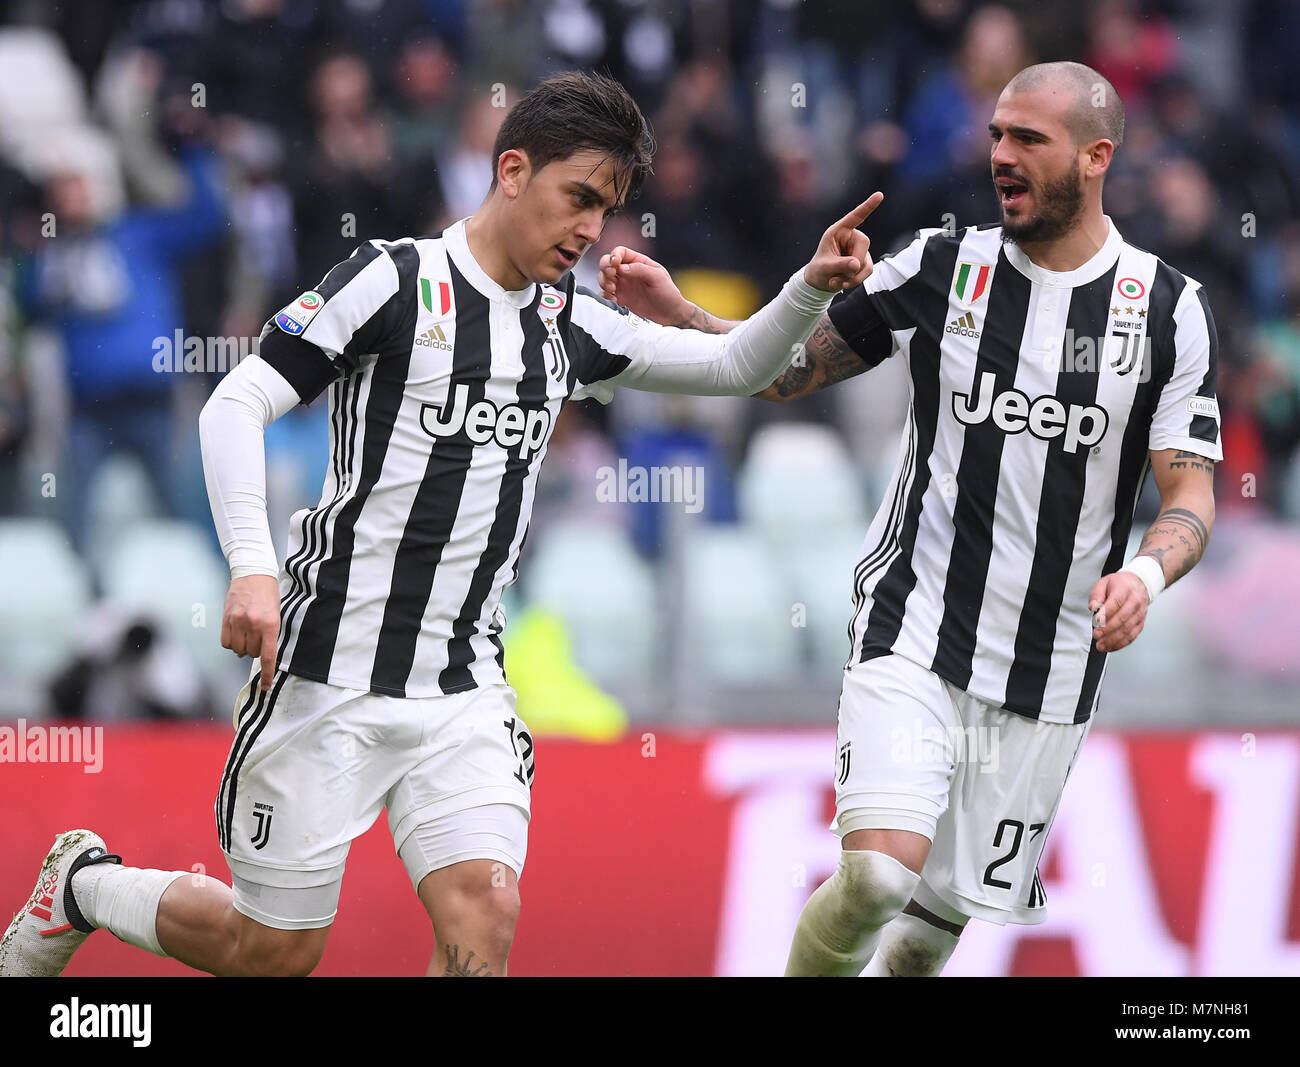 Torino, Italia. Undicesimo Mar, 2018. La Juventus' Paulo Dybala (L) celebra  durante una serie di una partita di calcio tra Juventus e Udinese a Torino,  Italia, 11 marzo 2018. La Juventus ha